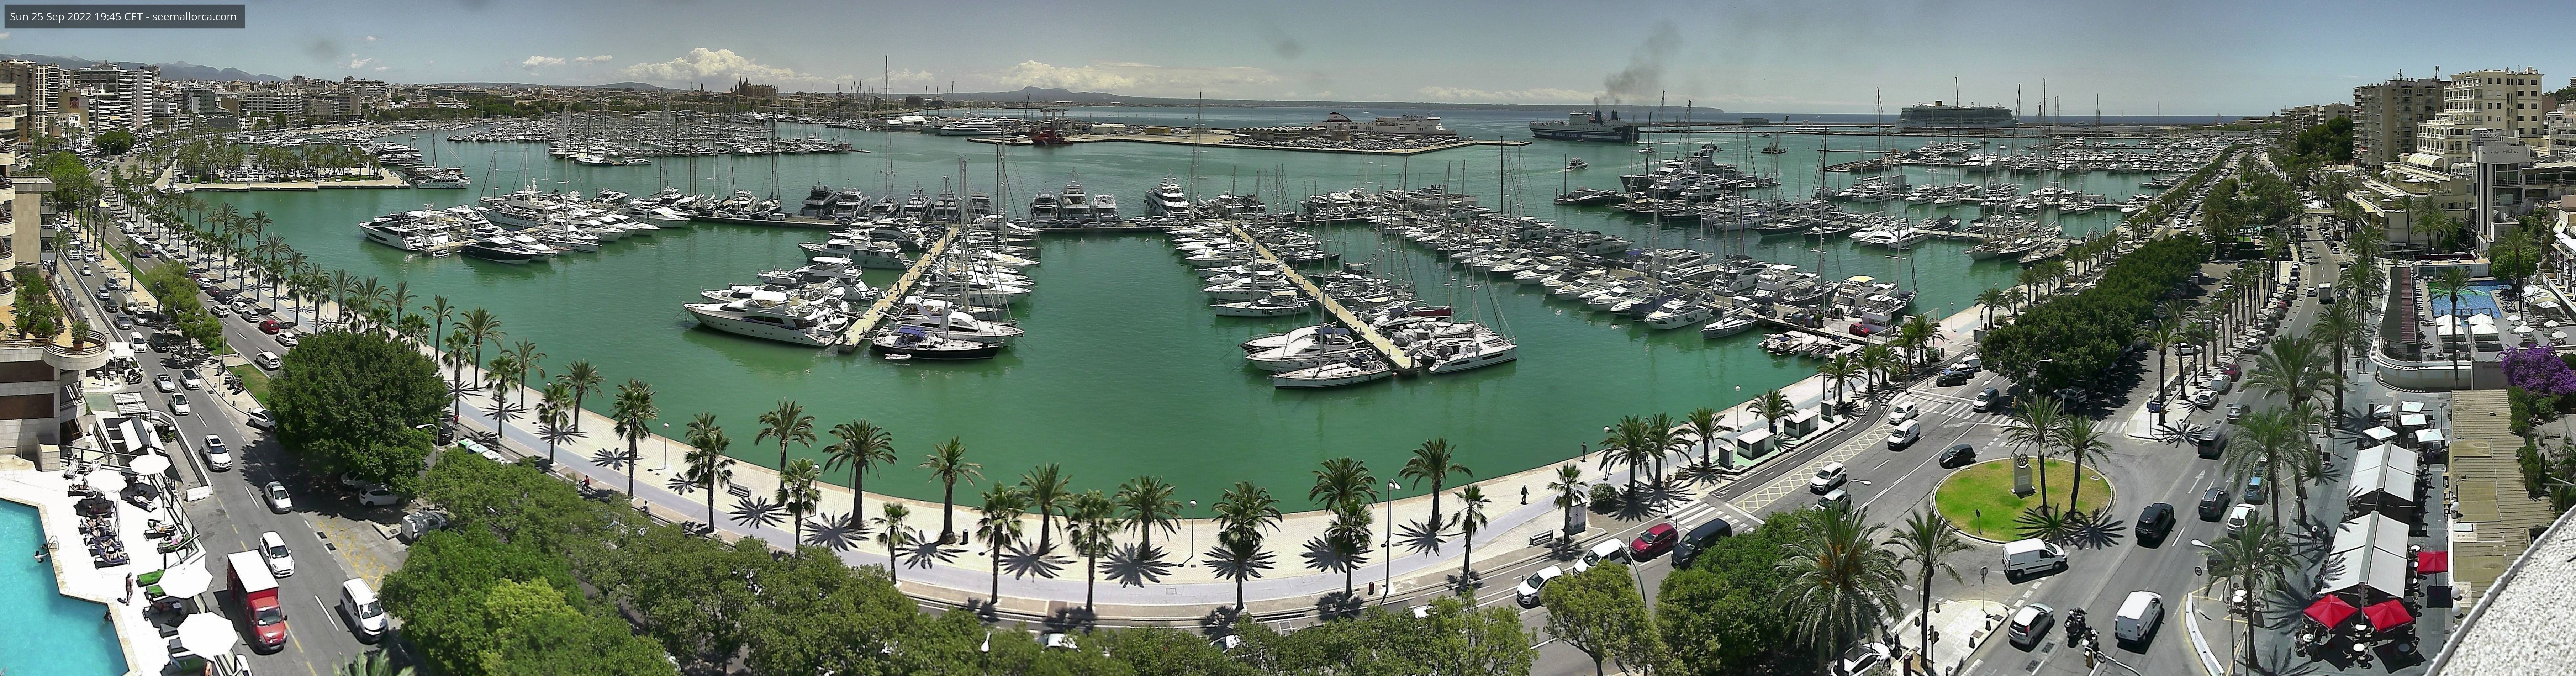 Webcam Mallorca Hafen